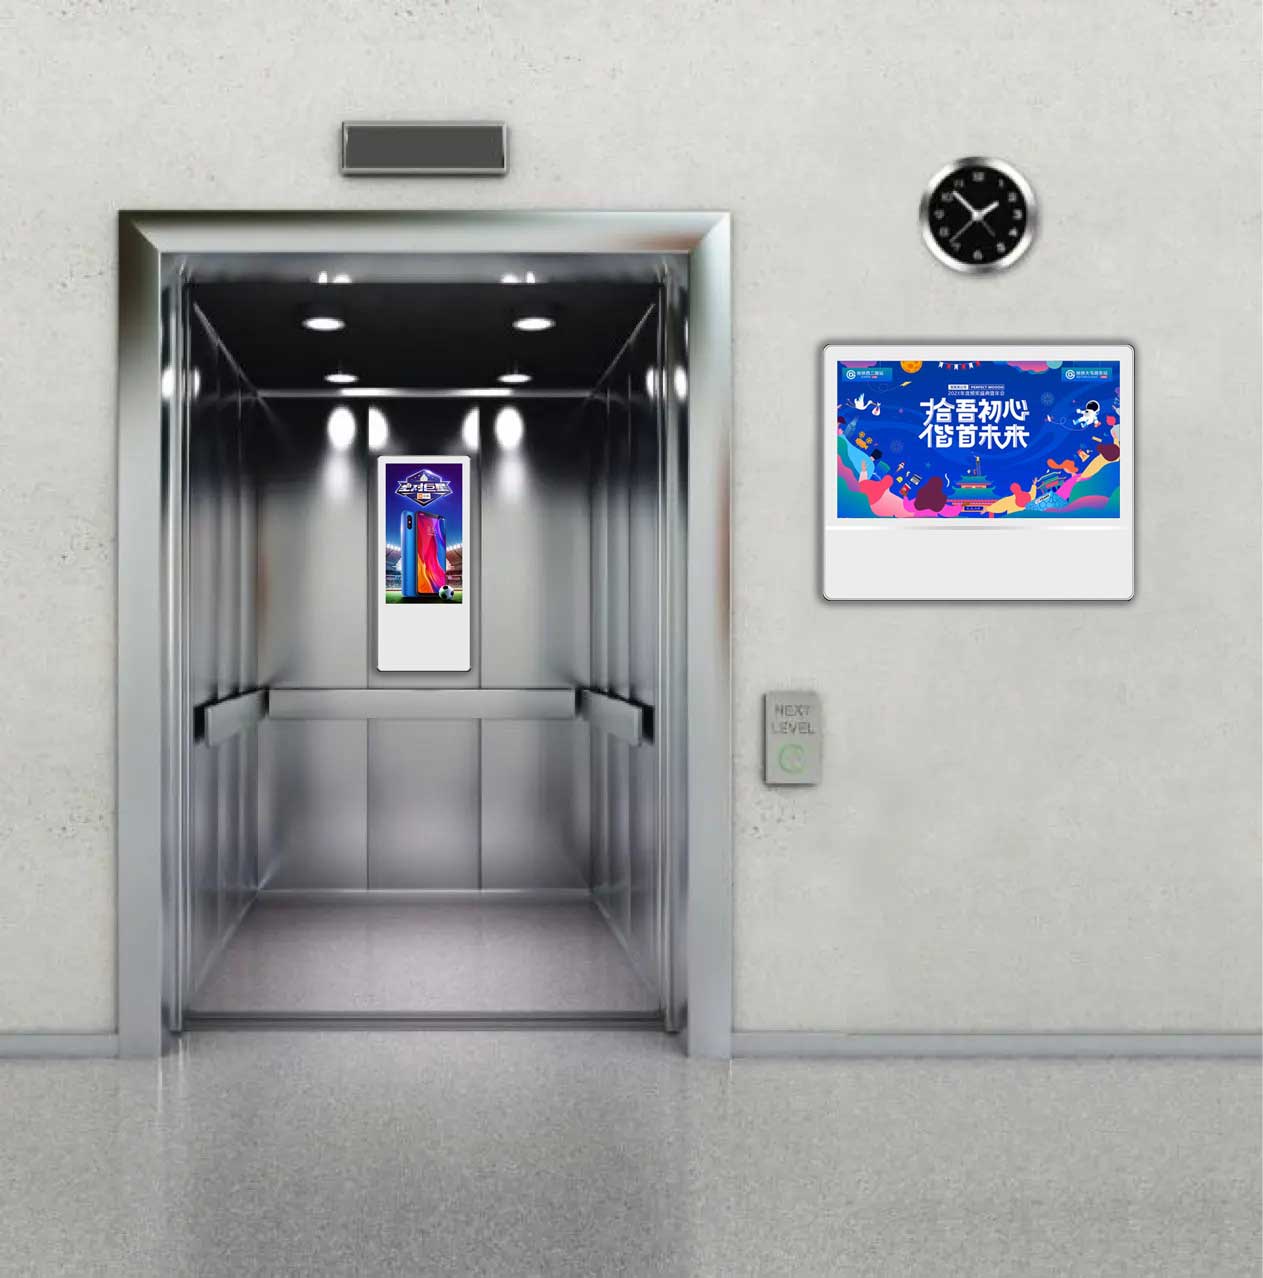 Elevator LCD Advertising Displays